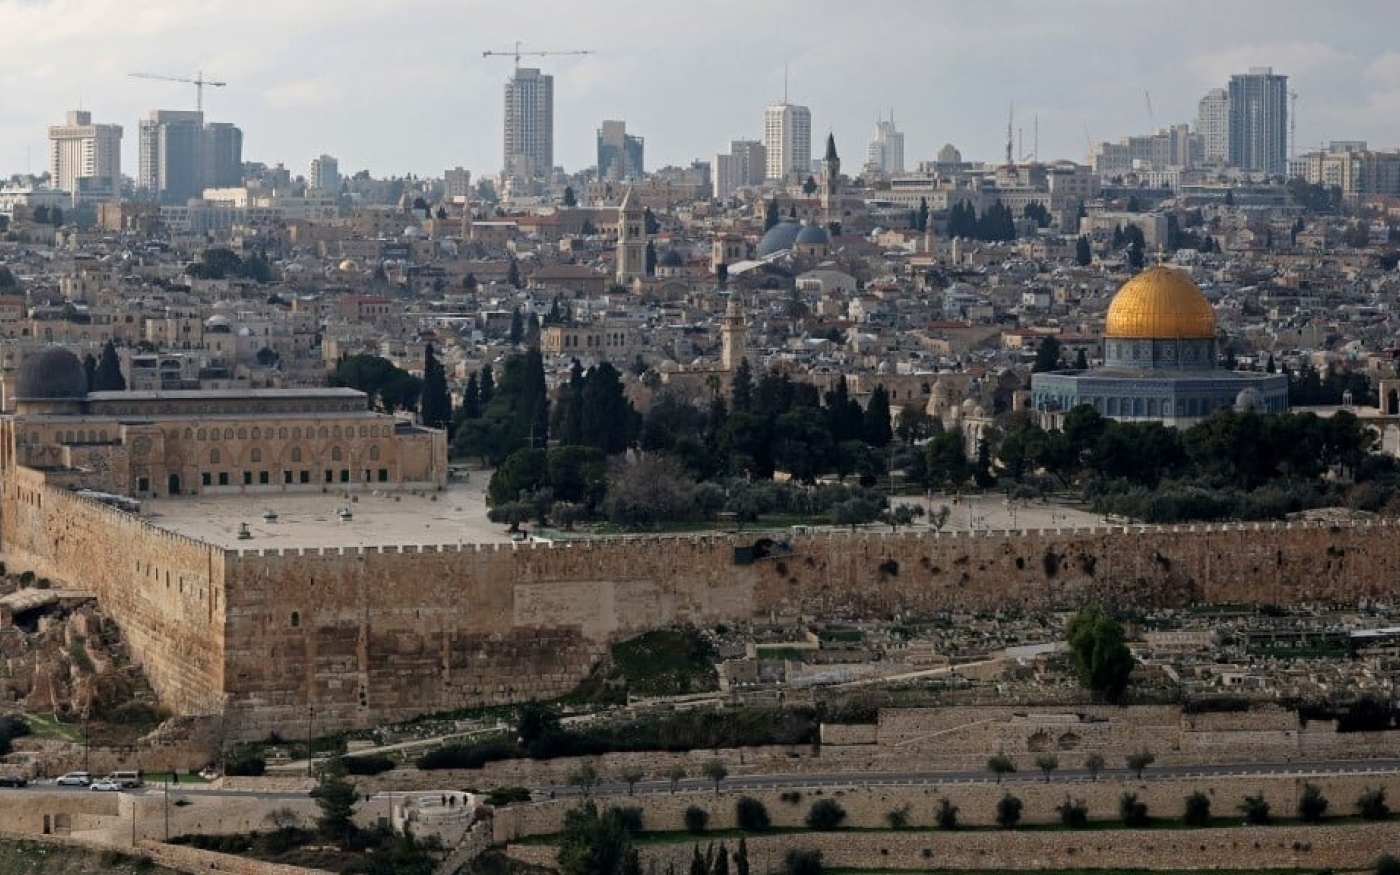 Le complexe de la mosquée al-Aqsa photographié dans la vieille ville de Jérusalem, le 2 janvier 2023 (AFP)